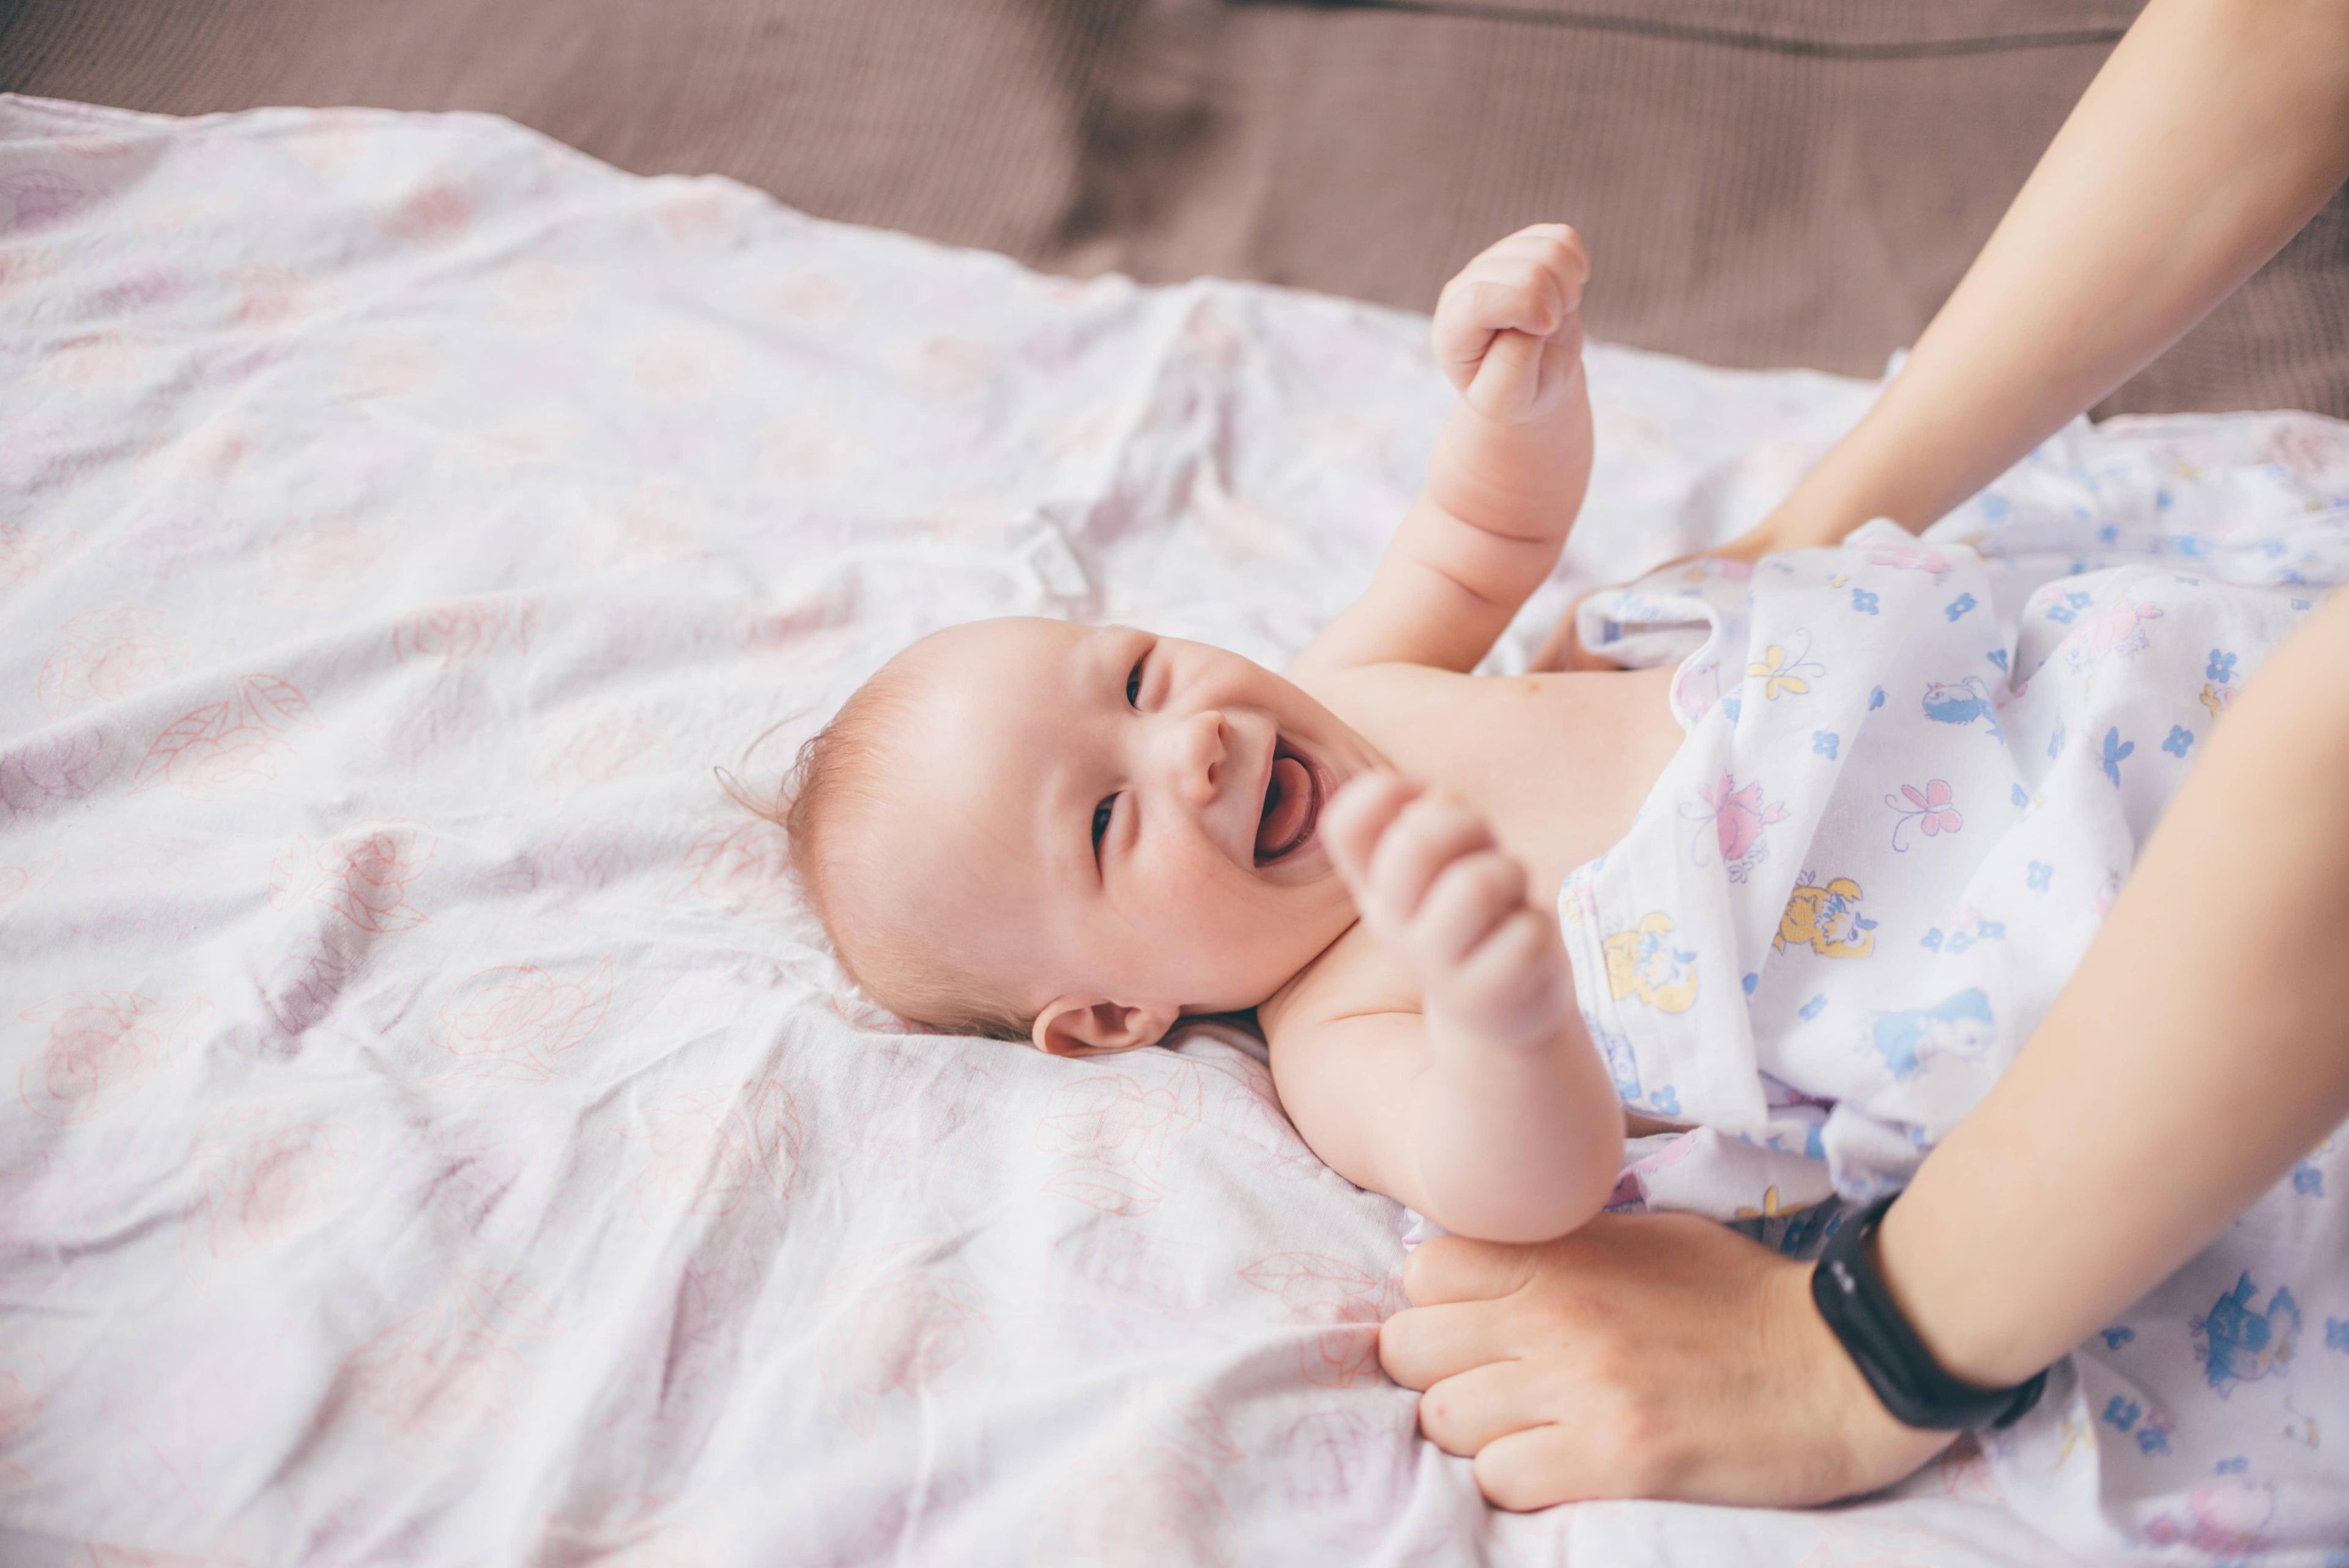 Comment savoir quand il faut changer la couche de bébé ?